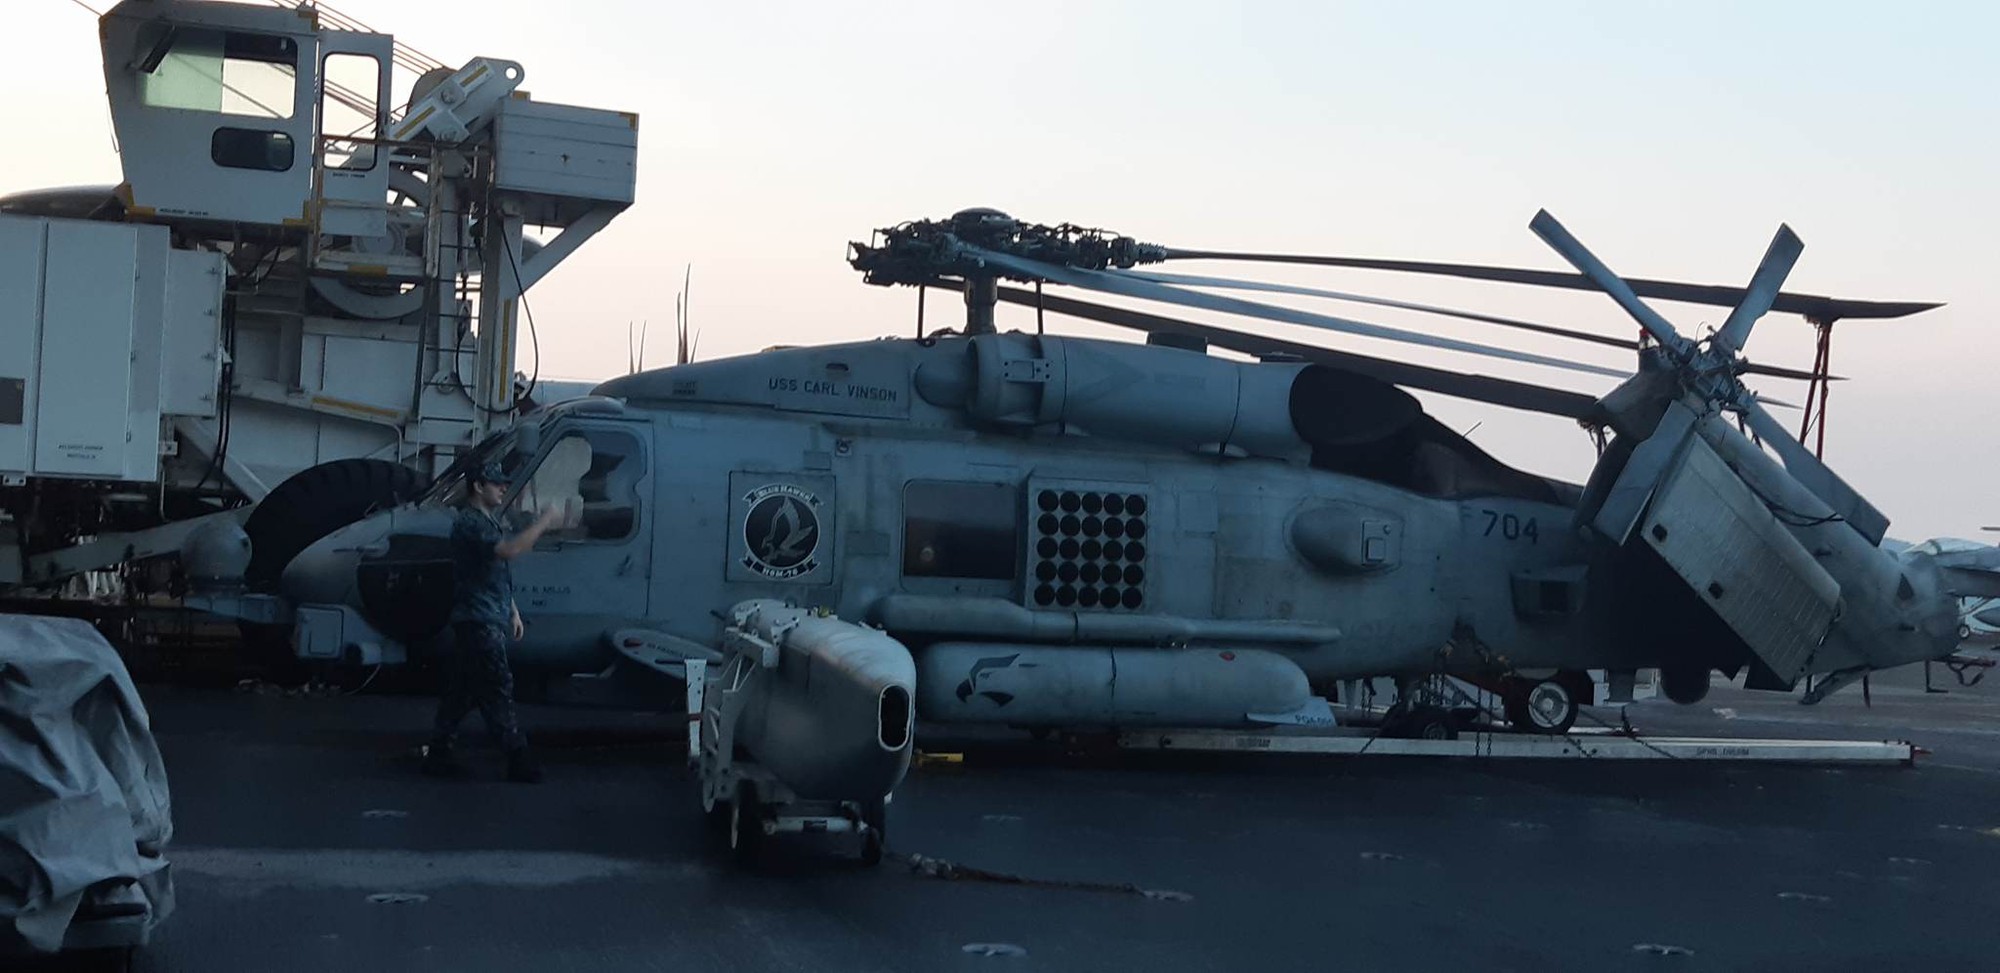 Ngắm dàn máy bay khủng trên tàu sân bay USS Carl Vinson - Ảnh 6.